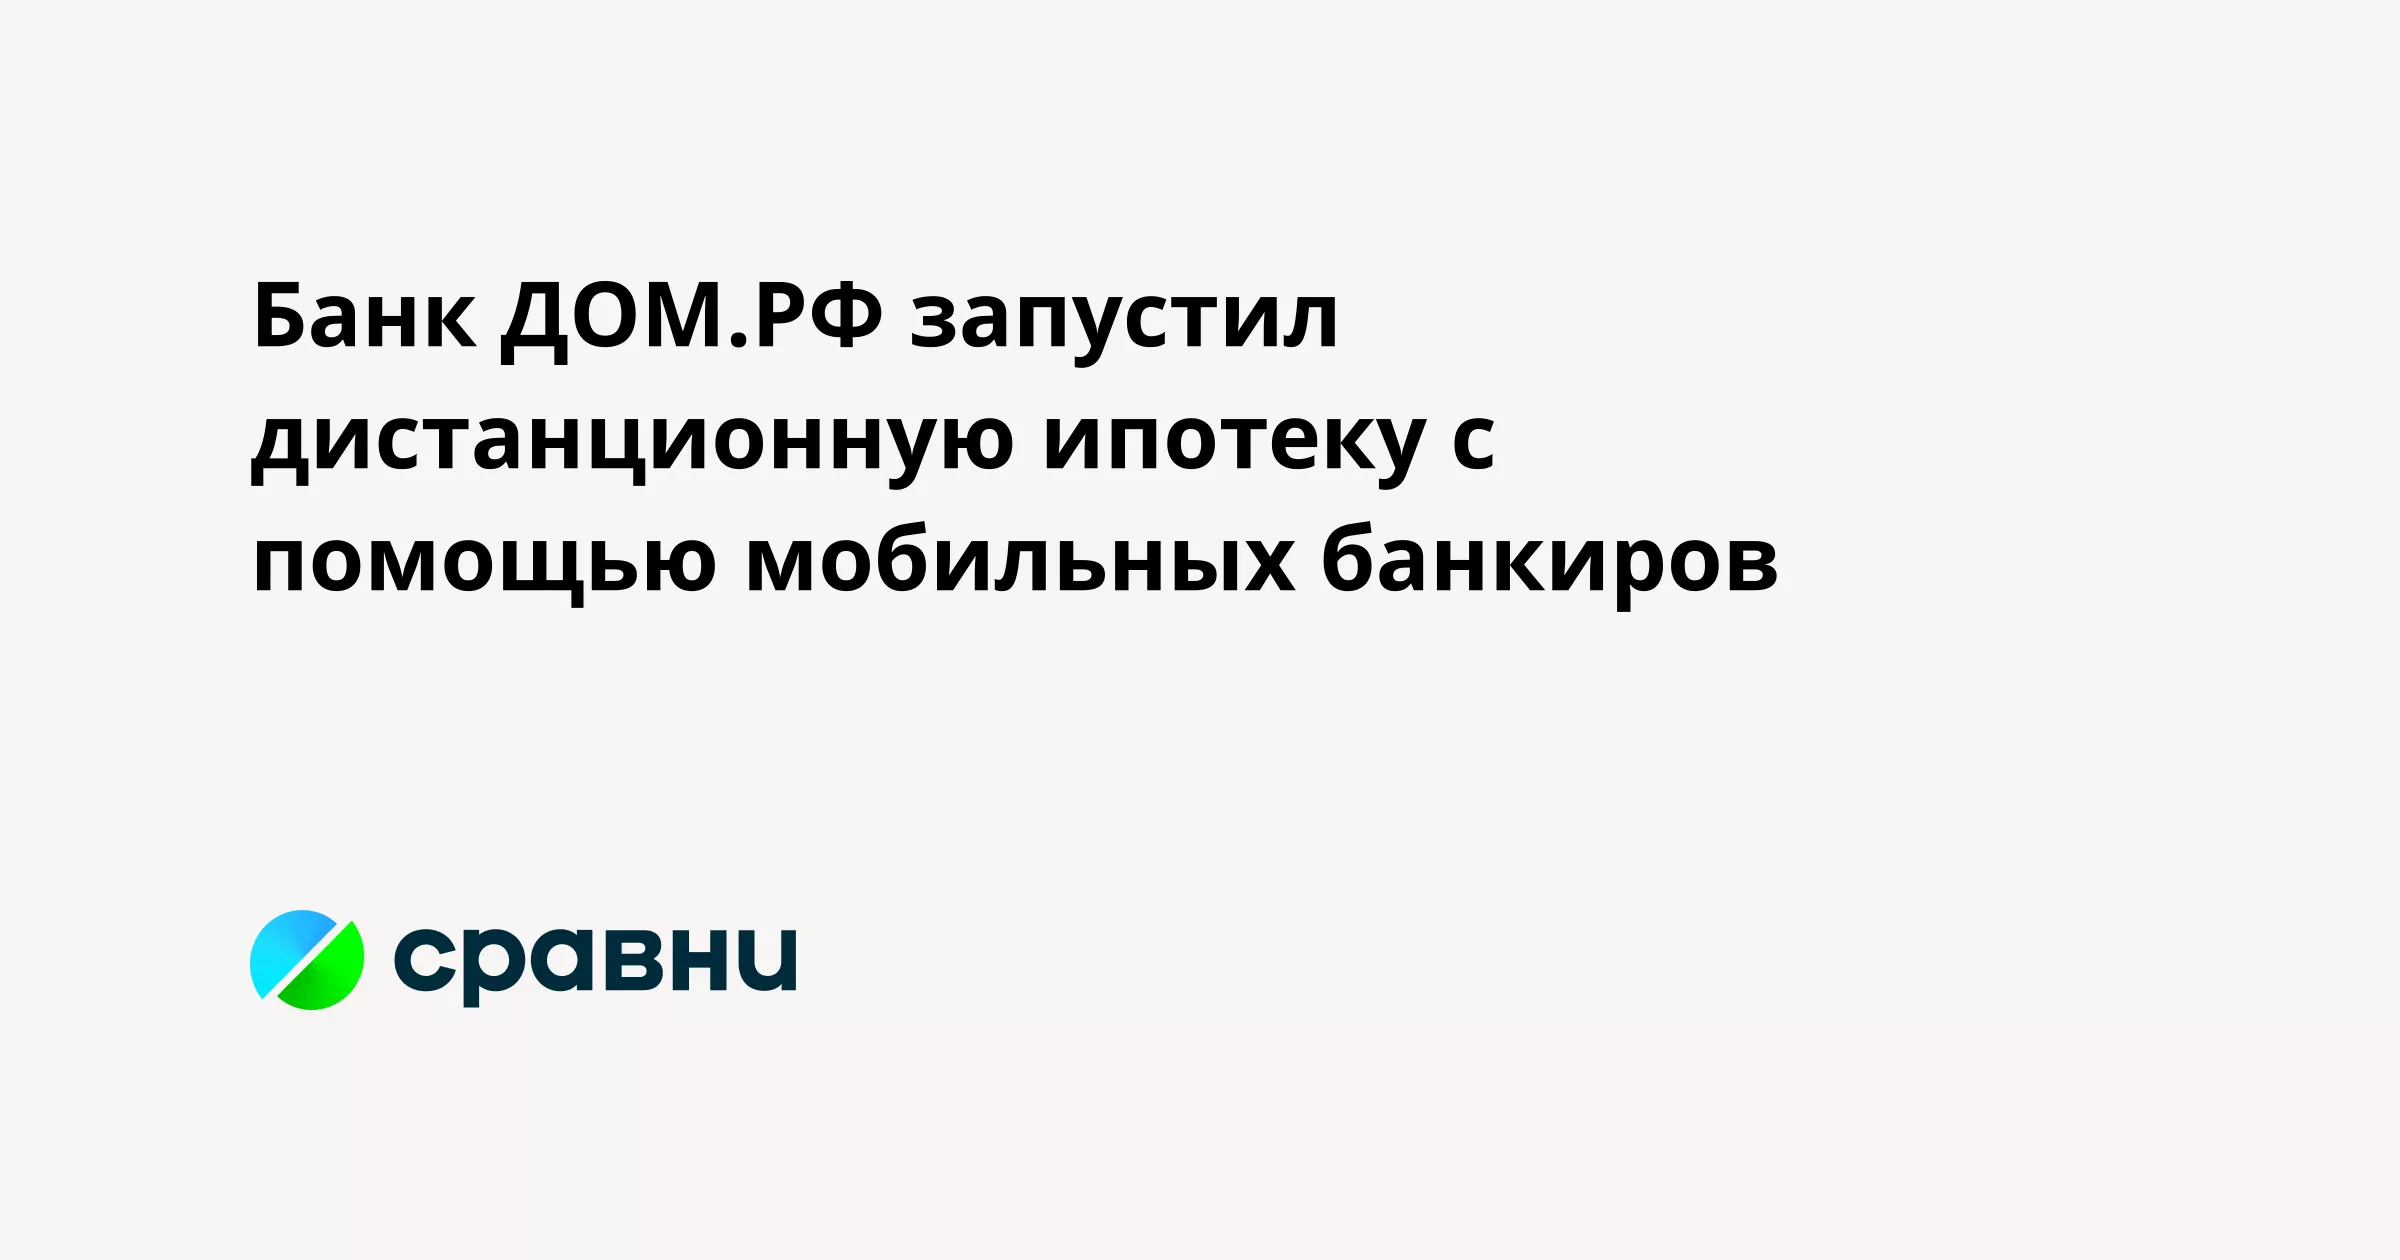 Банк ДОМ.РФ запустил дистанционную ипотеку с помощью мобильных банкиров